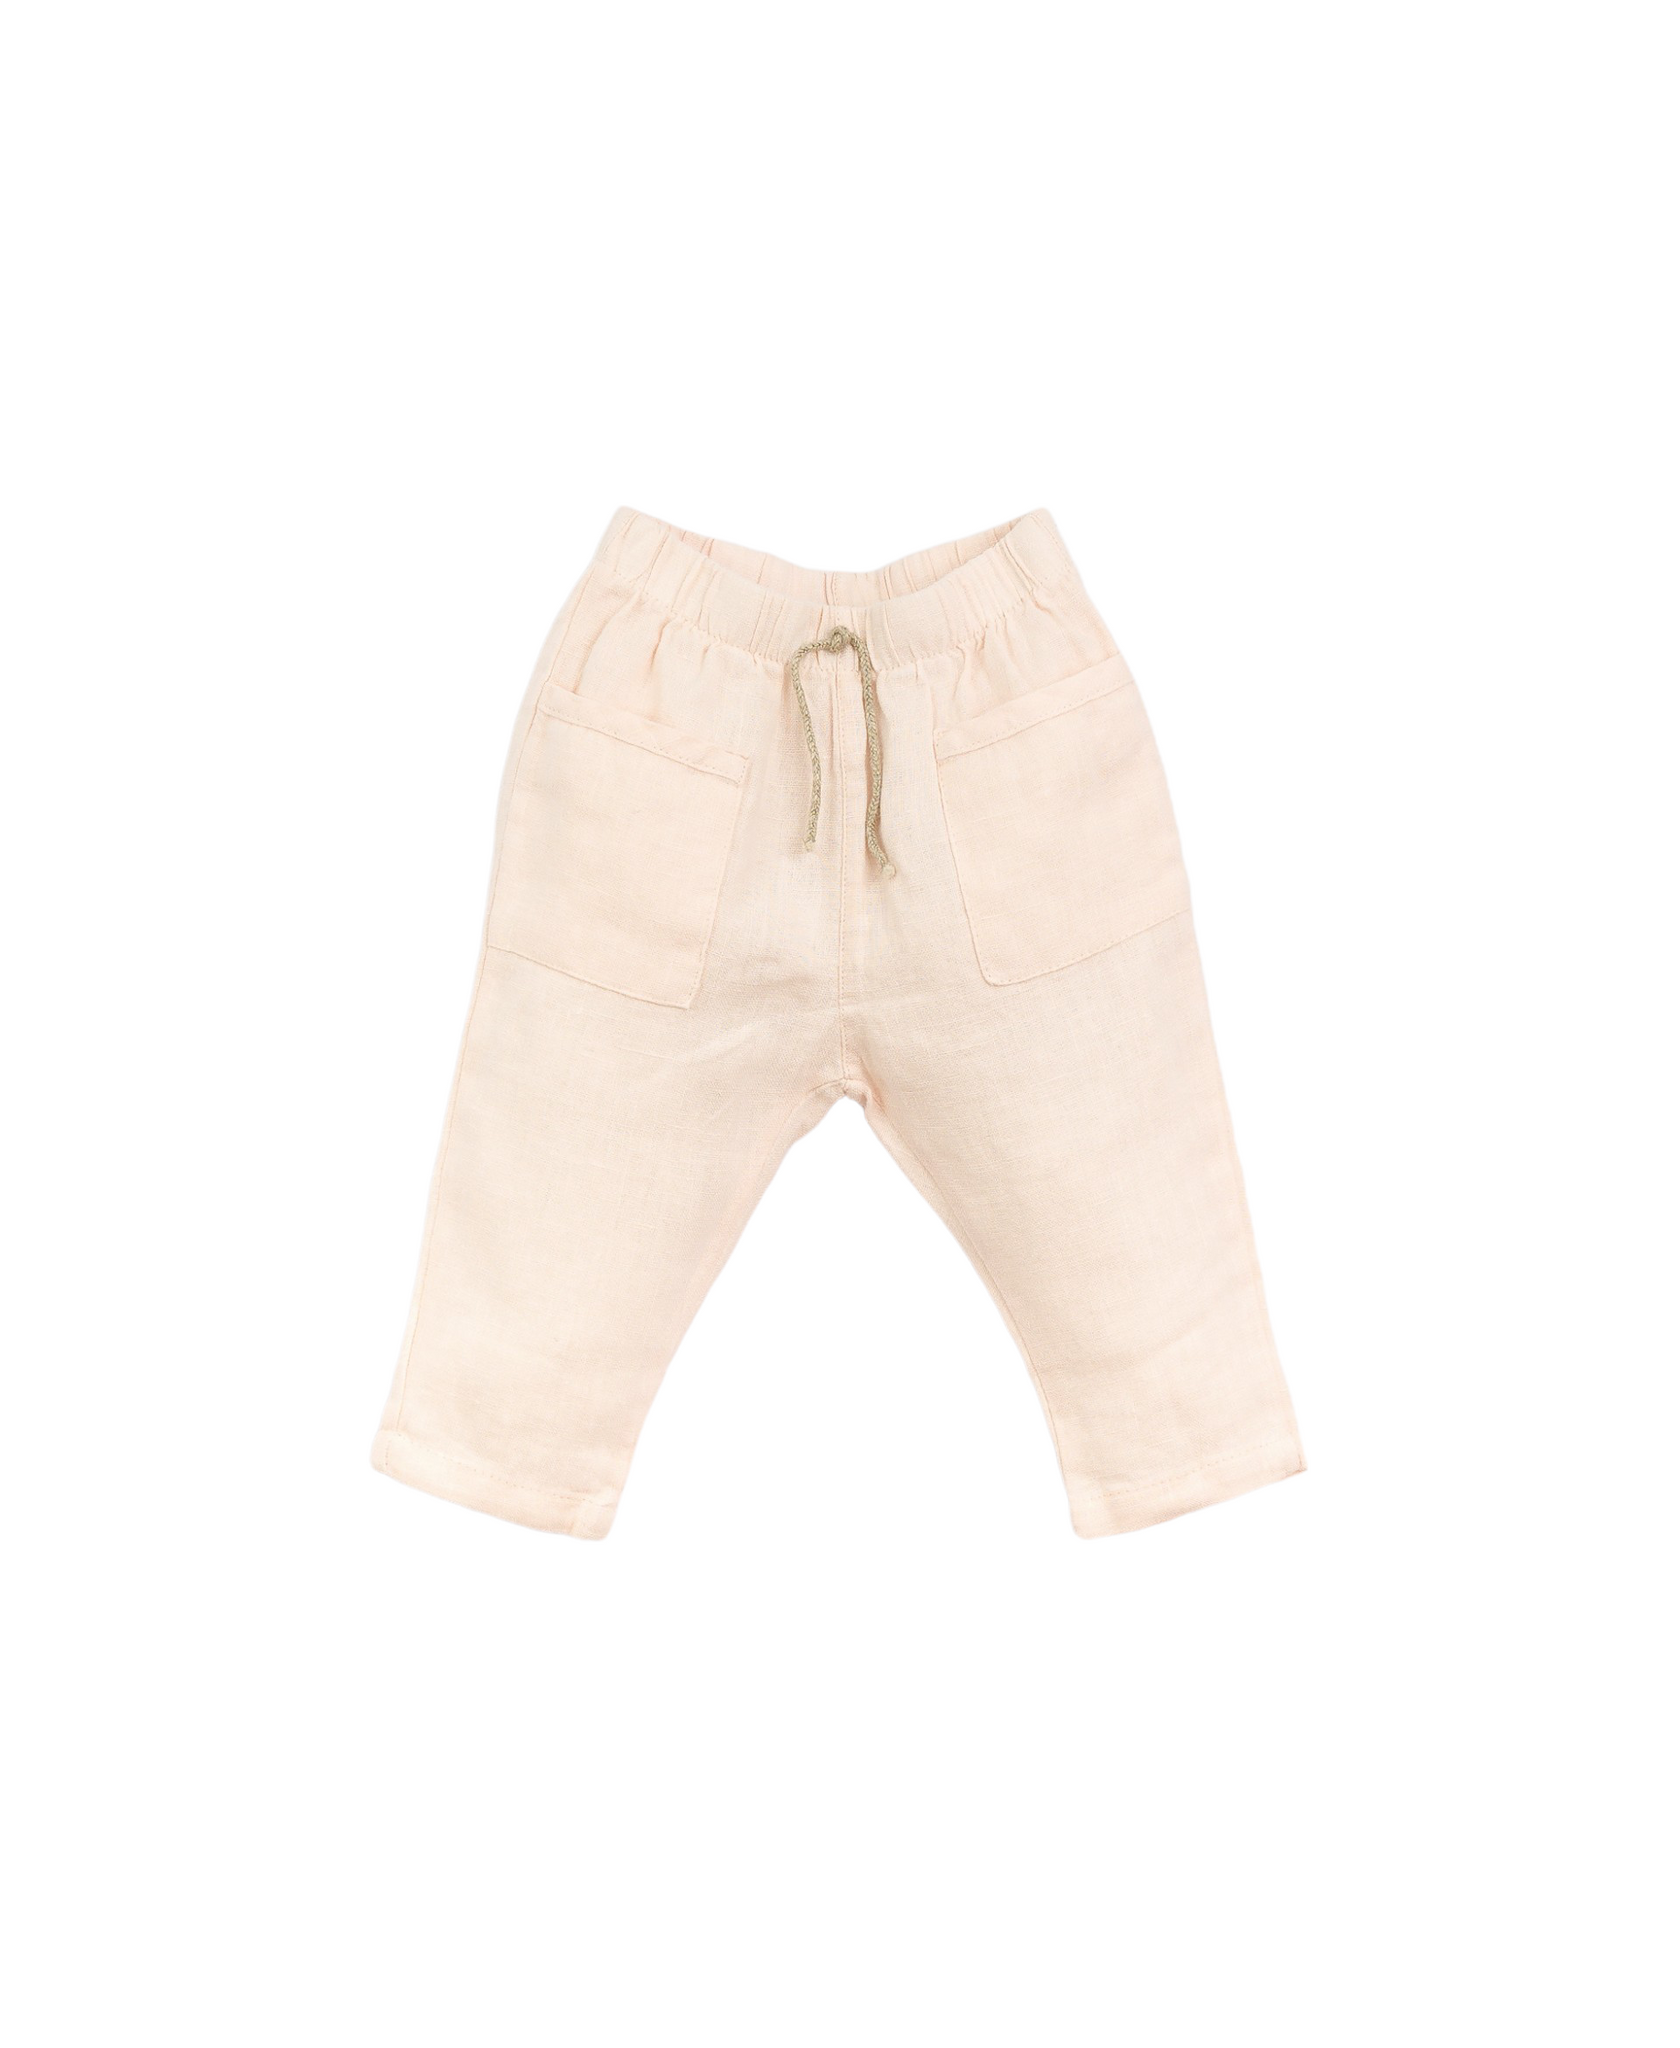 Pantalone rosa cipria per neonata